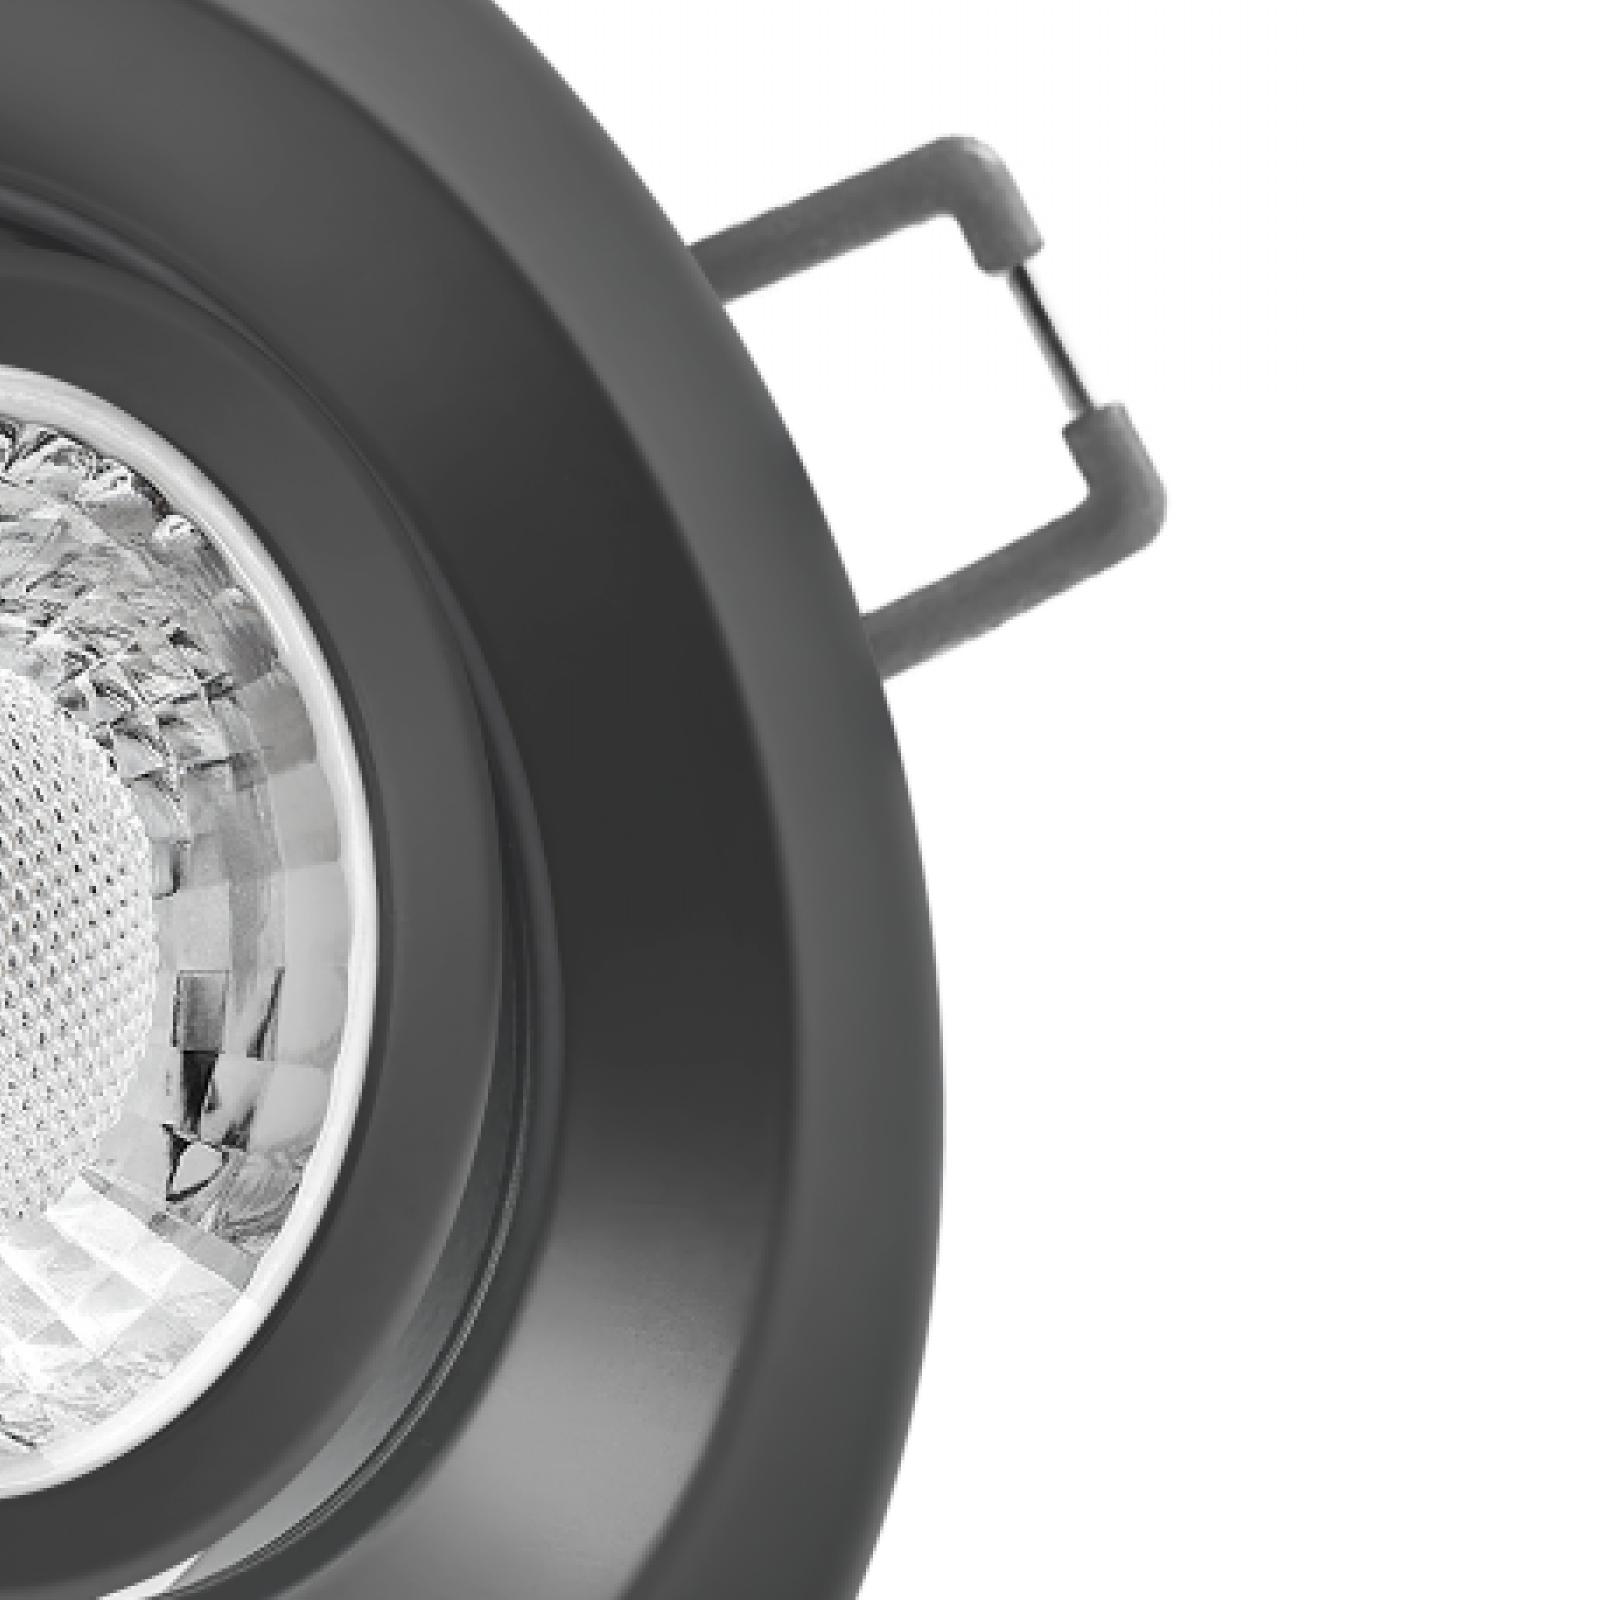 LED Einbaustrahler schwarz | Runder Einbauspot | 360° schwenkbar | Lochmaß Ø 68mm - 95mm | Einbautiefe 64mm | Anschlussfertig mit GU10 230V Fassung 